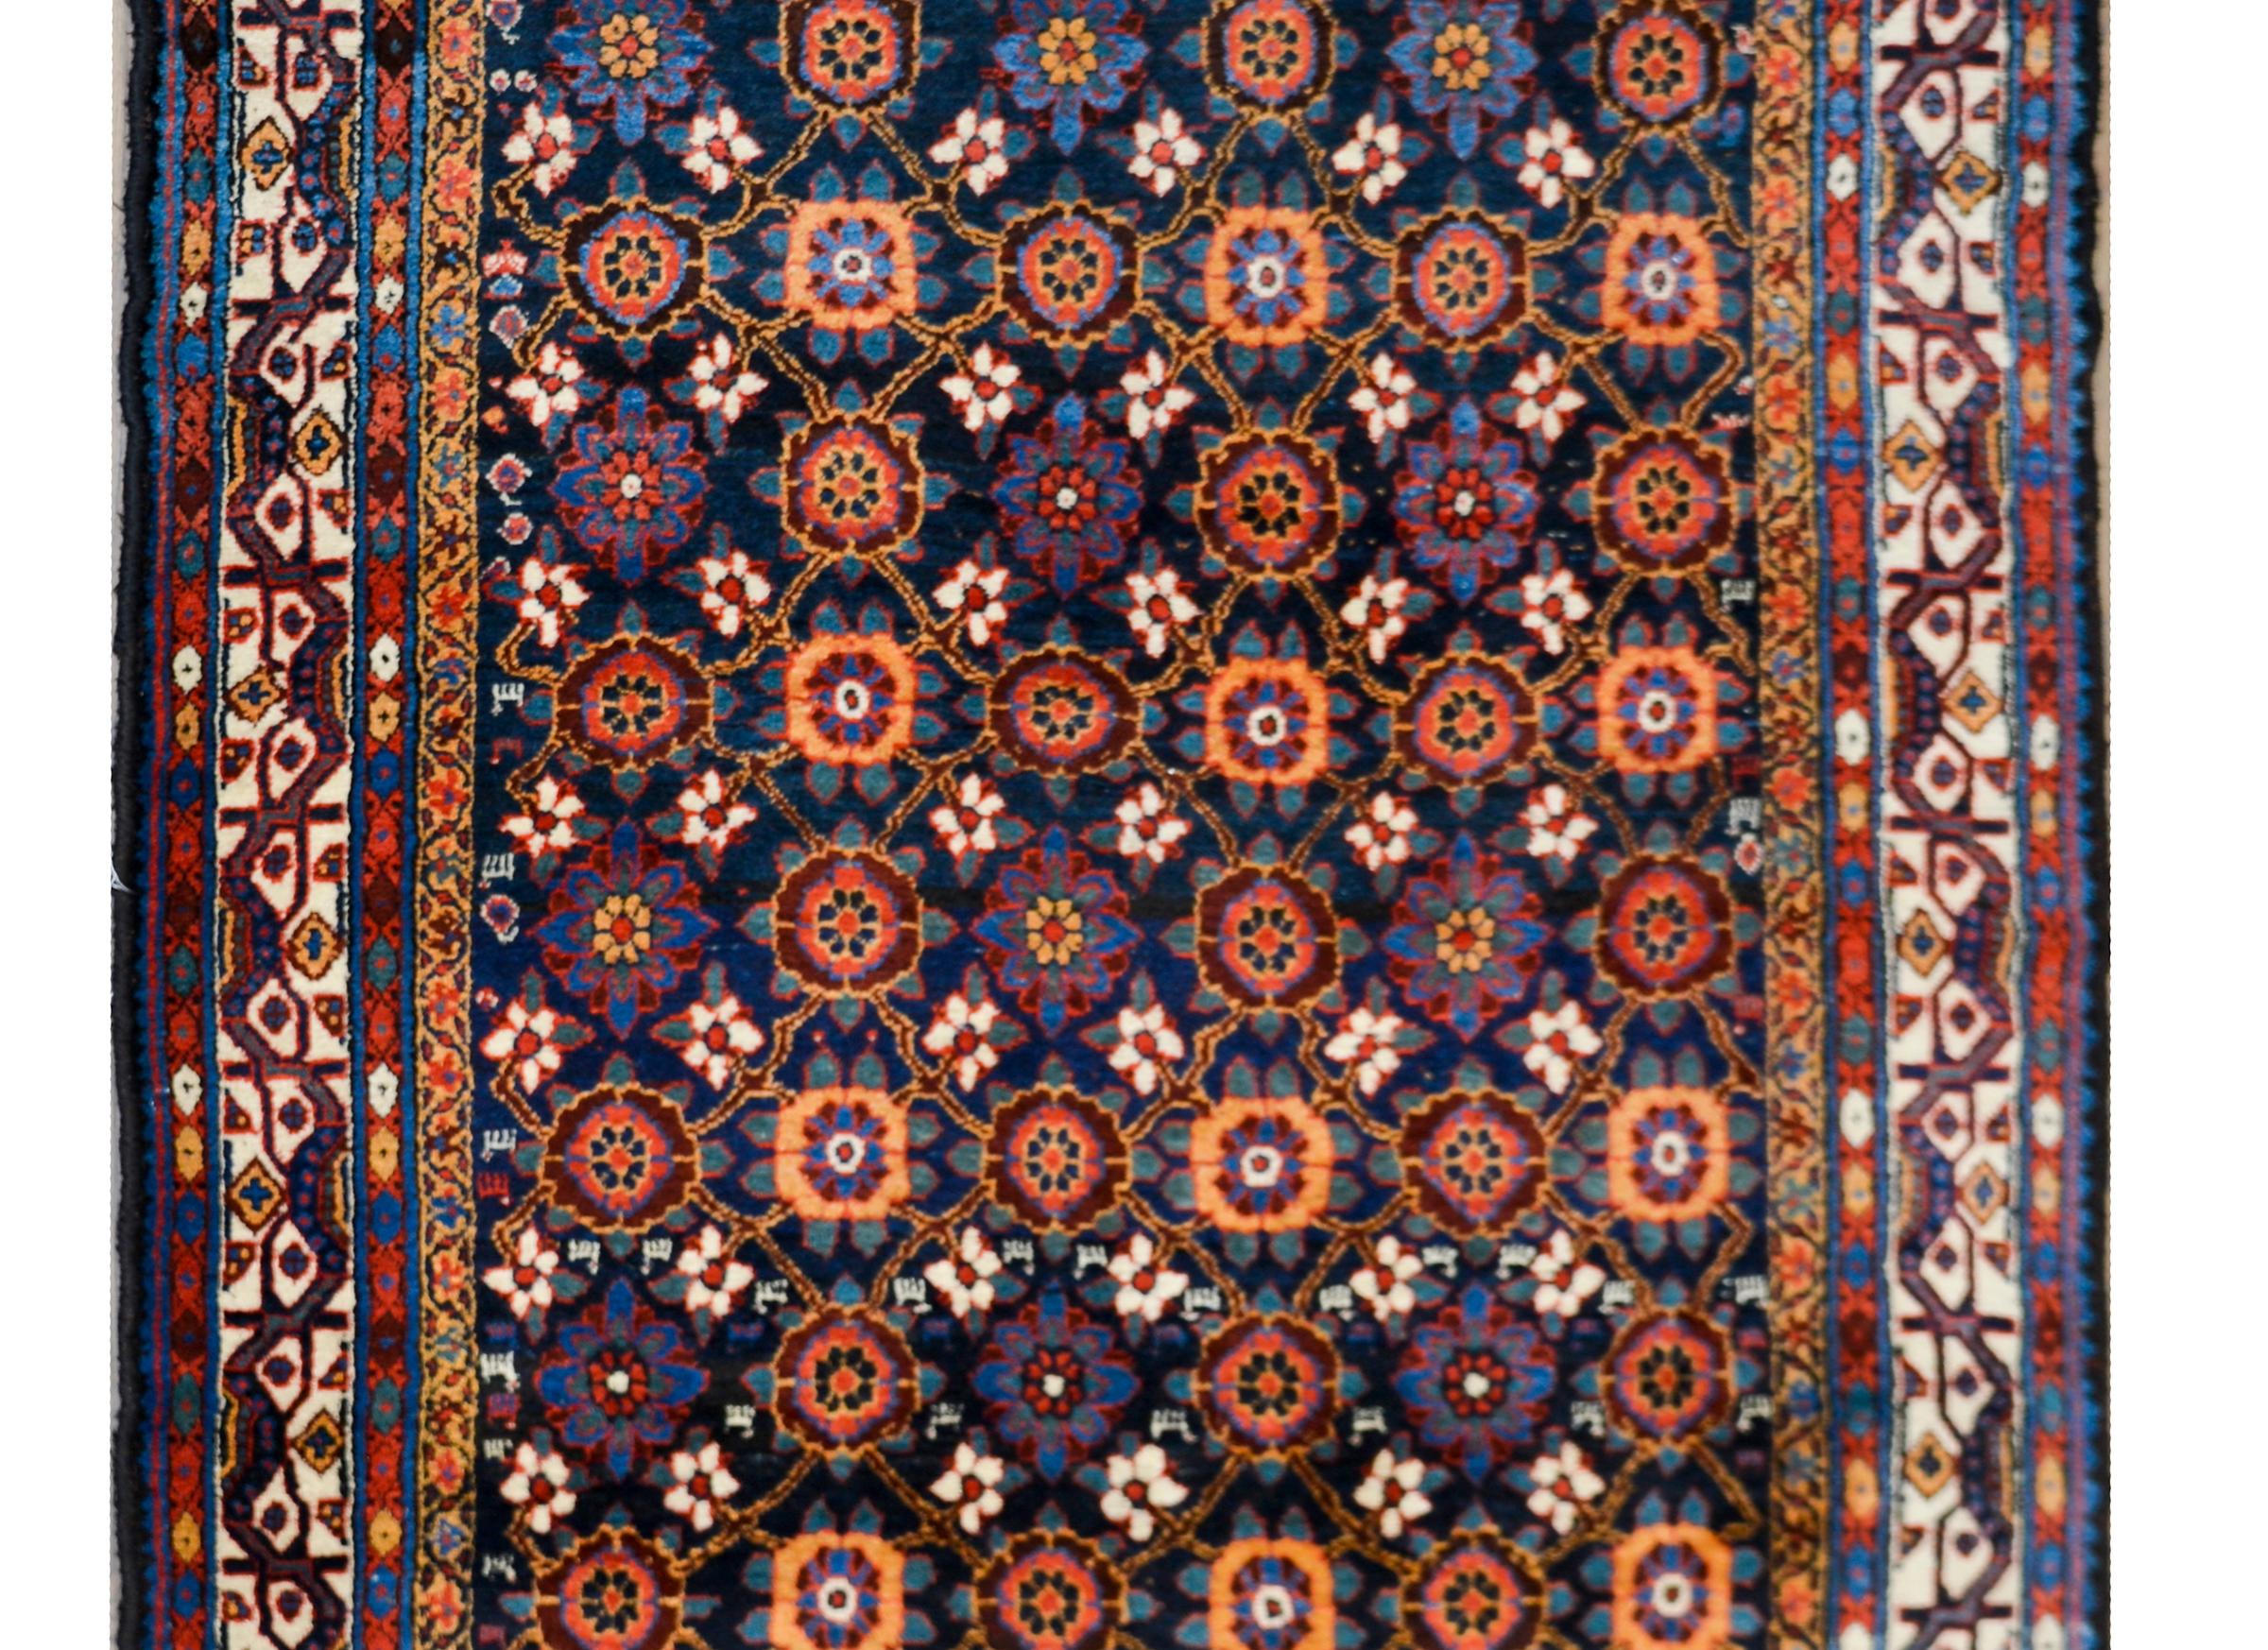 Eine wunderbare frühen 20. Jahrhundert persischen Afshar Teppich mit einem wunderbaren all over Spalier floralen Muster gewebt in Fett crimsons, indigos, weiß und gold, vor einem dunklen indigo Hintergrund und umgeben von einem Paar floral